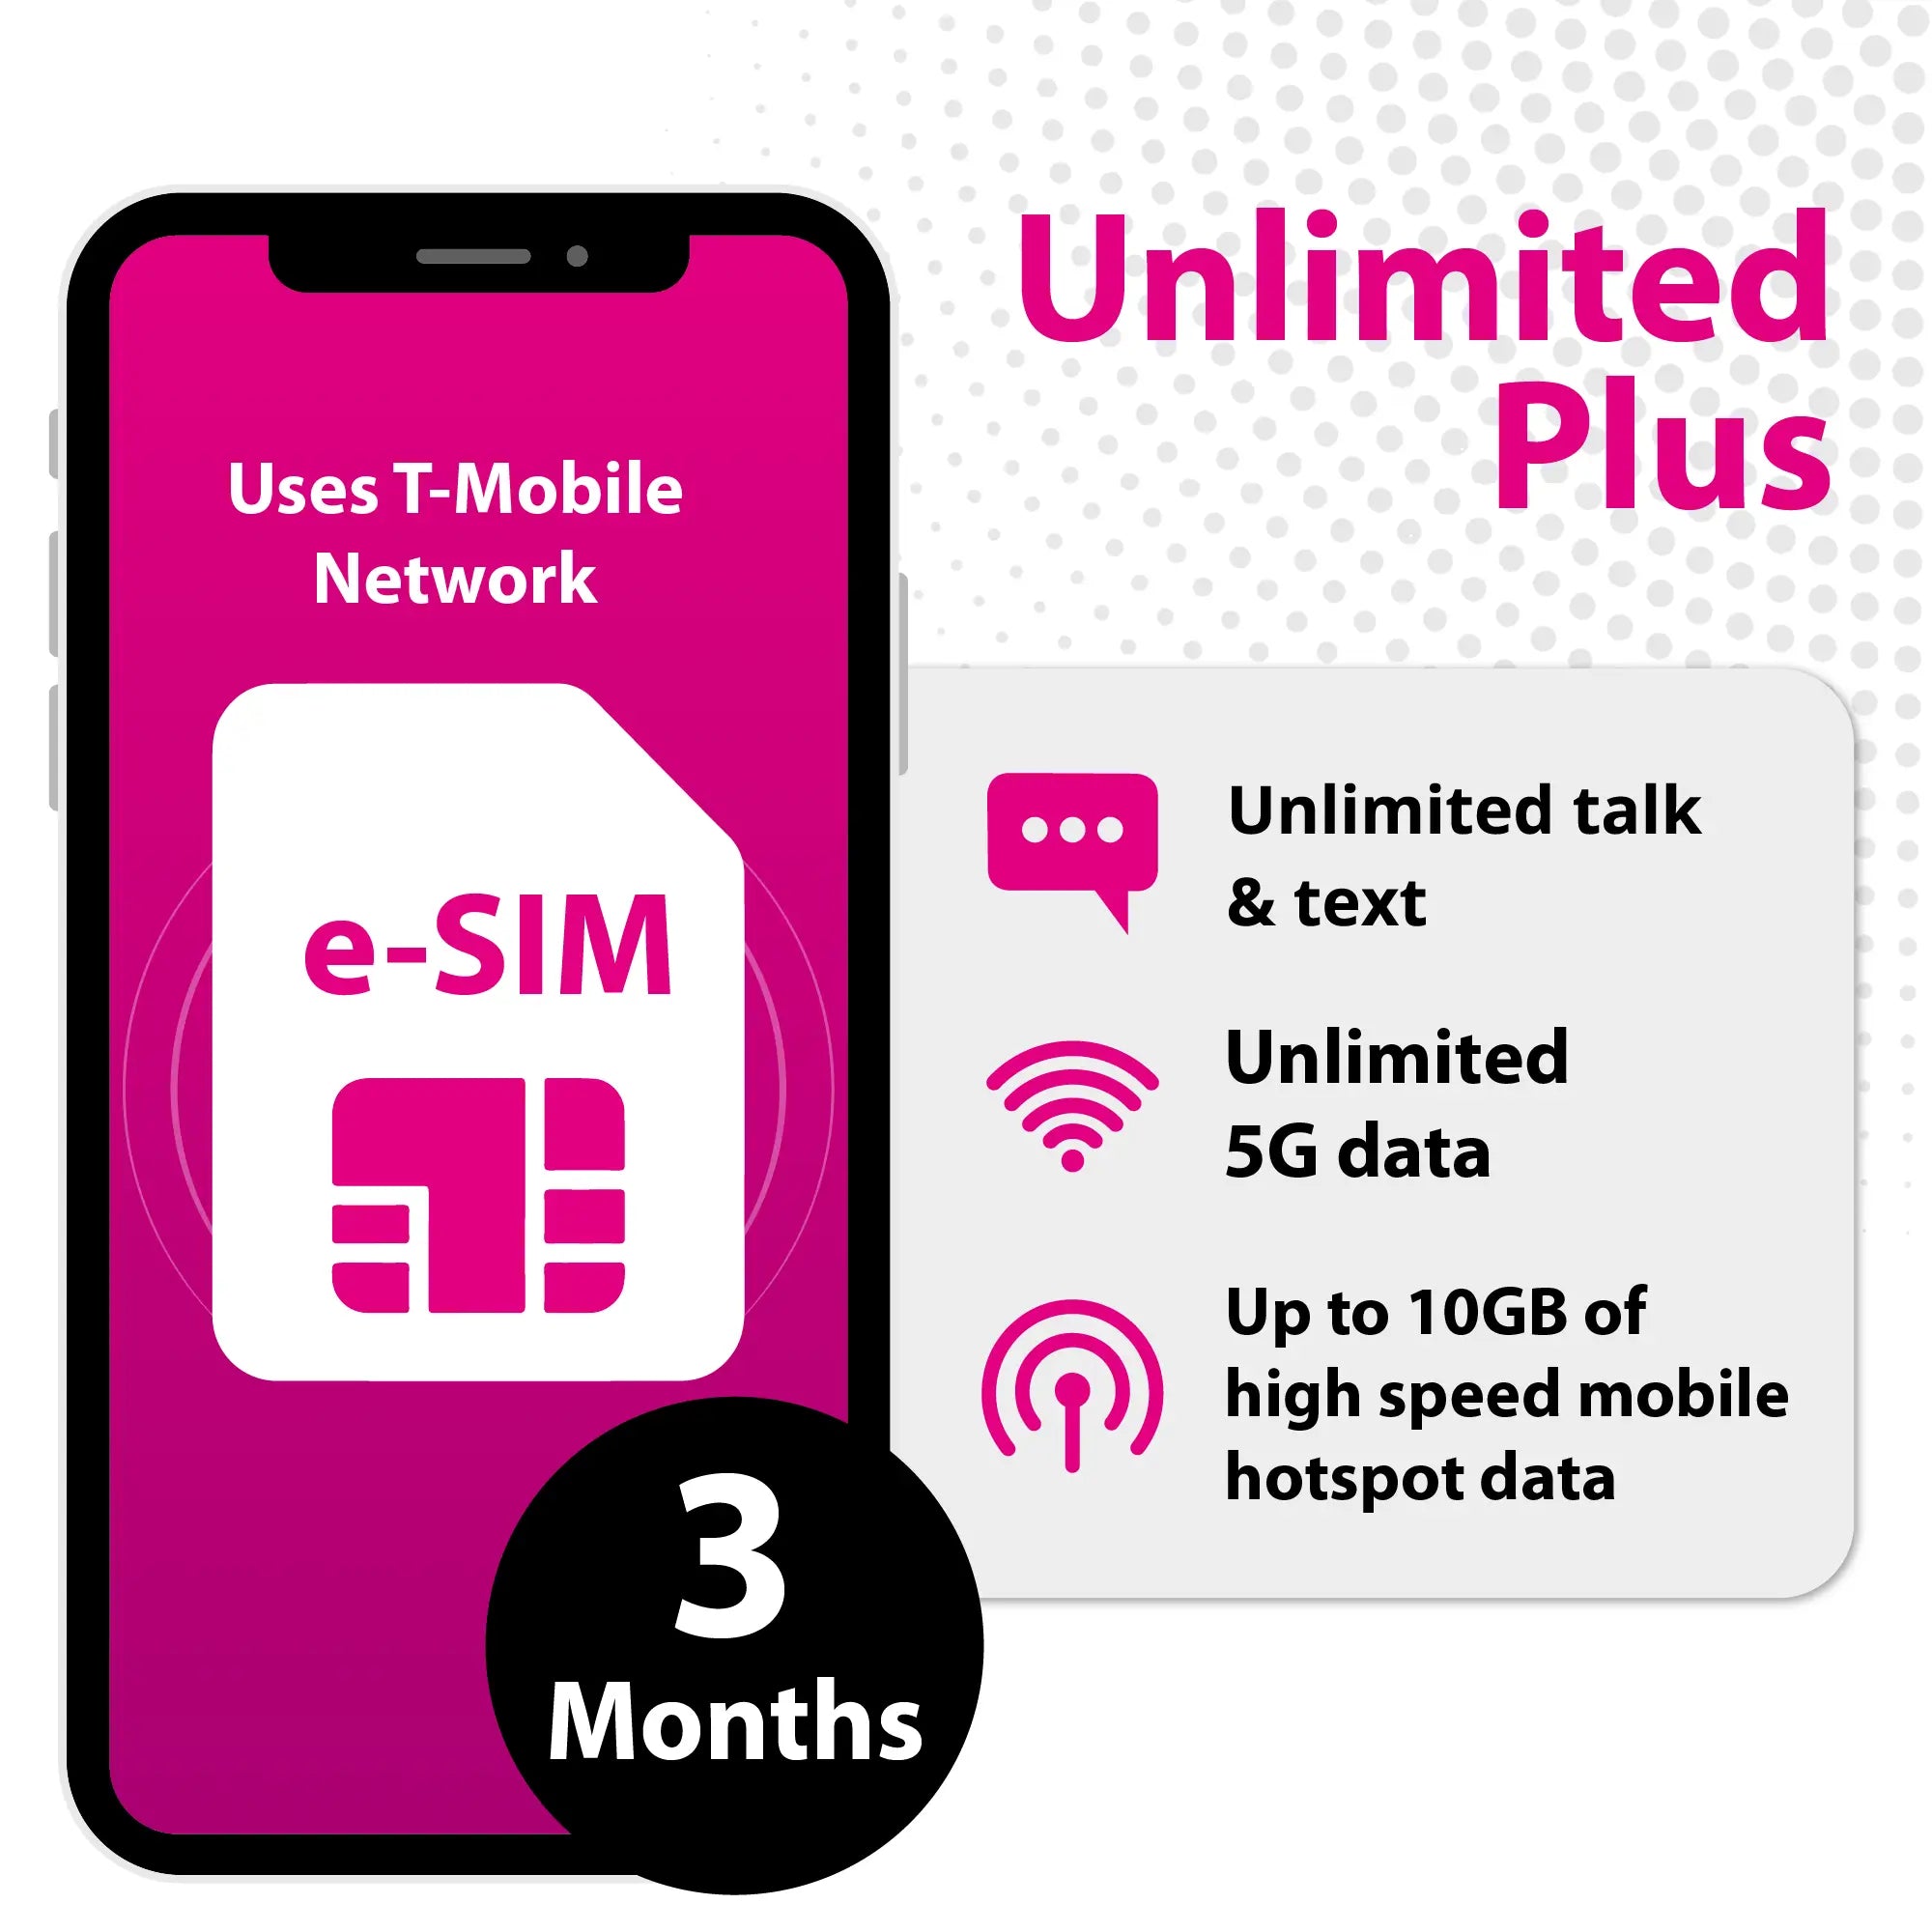 T-Mobile USA SIM card